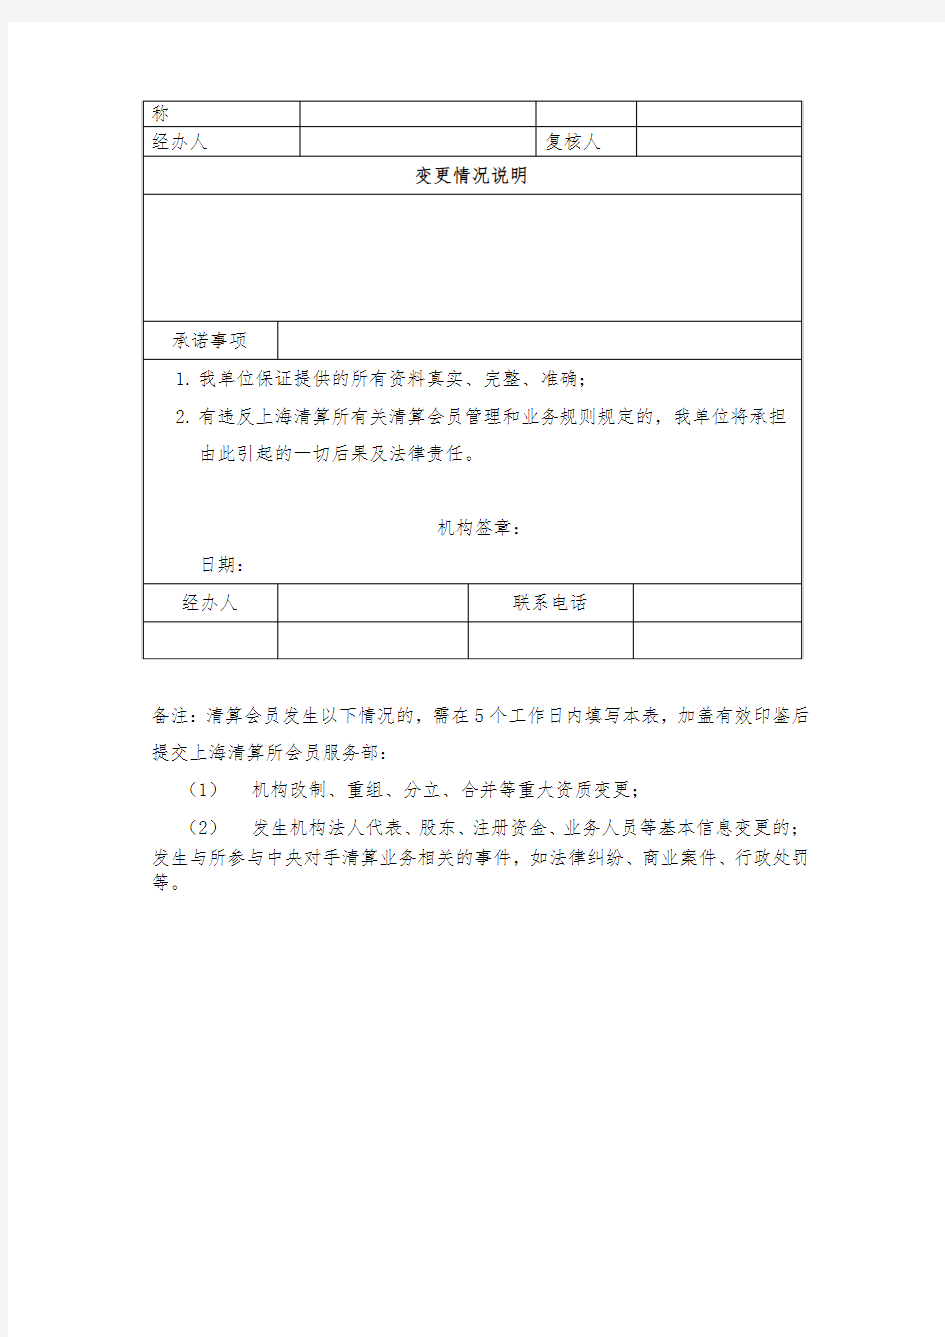 上海清算所清算会员信息变更登记表(C-1)